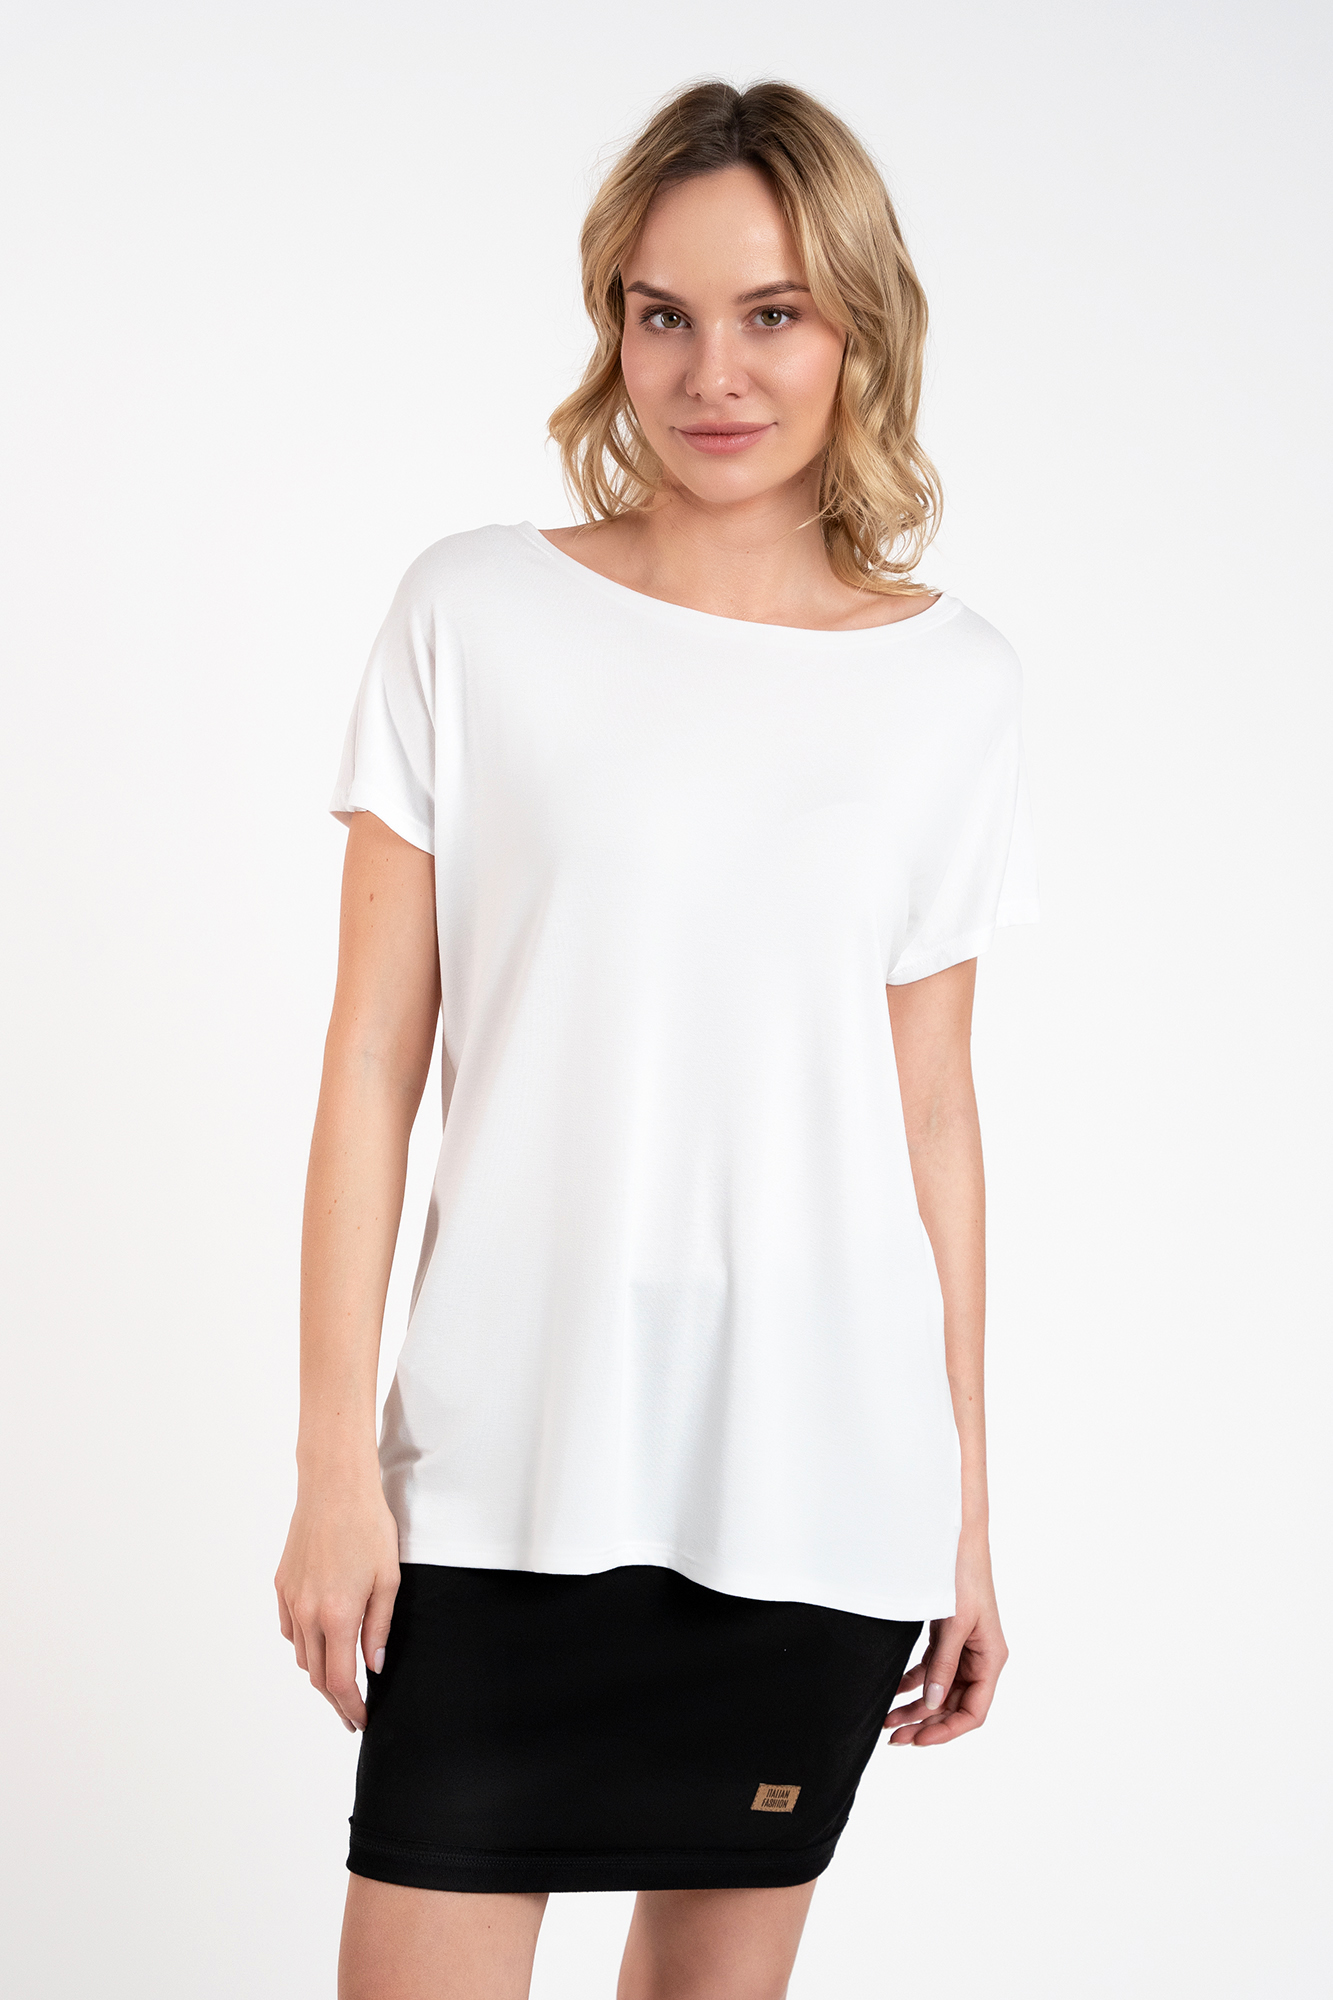 Women's blouse Ksenia with short sleeves - white